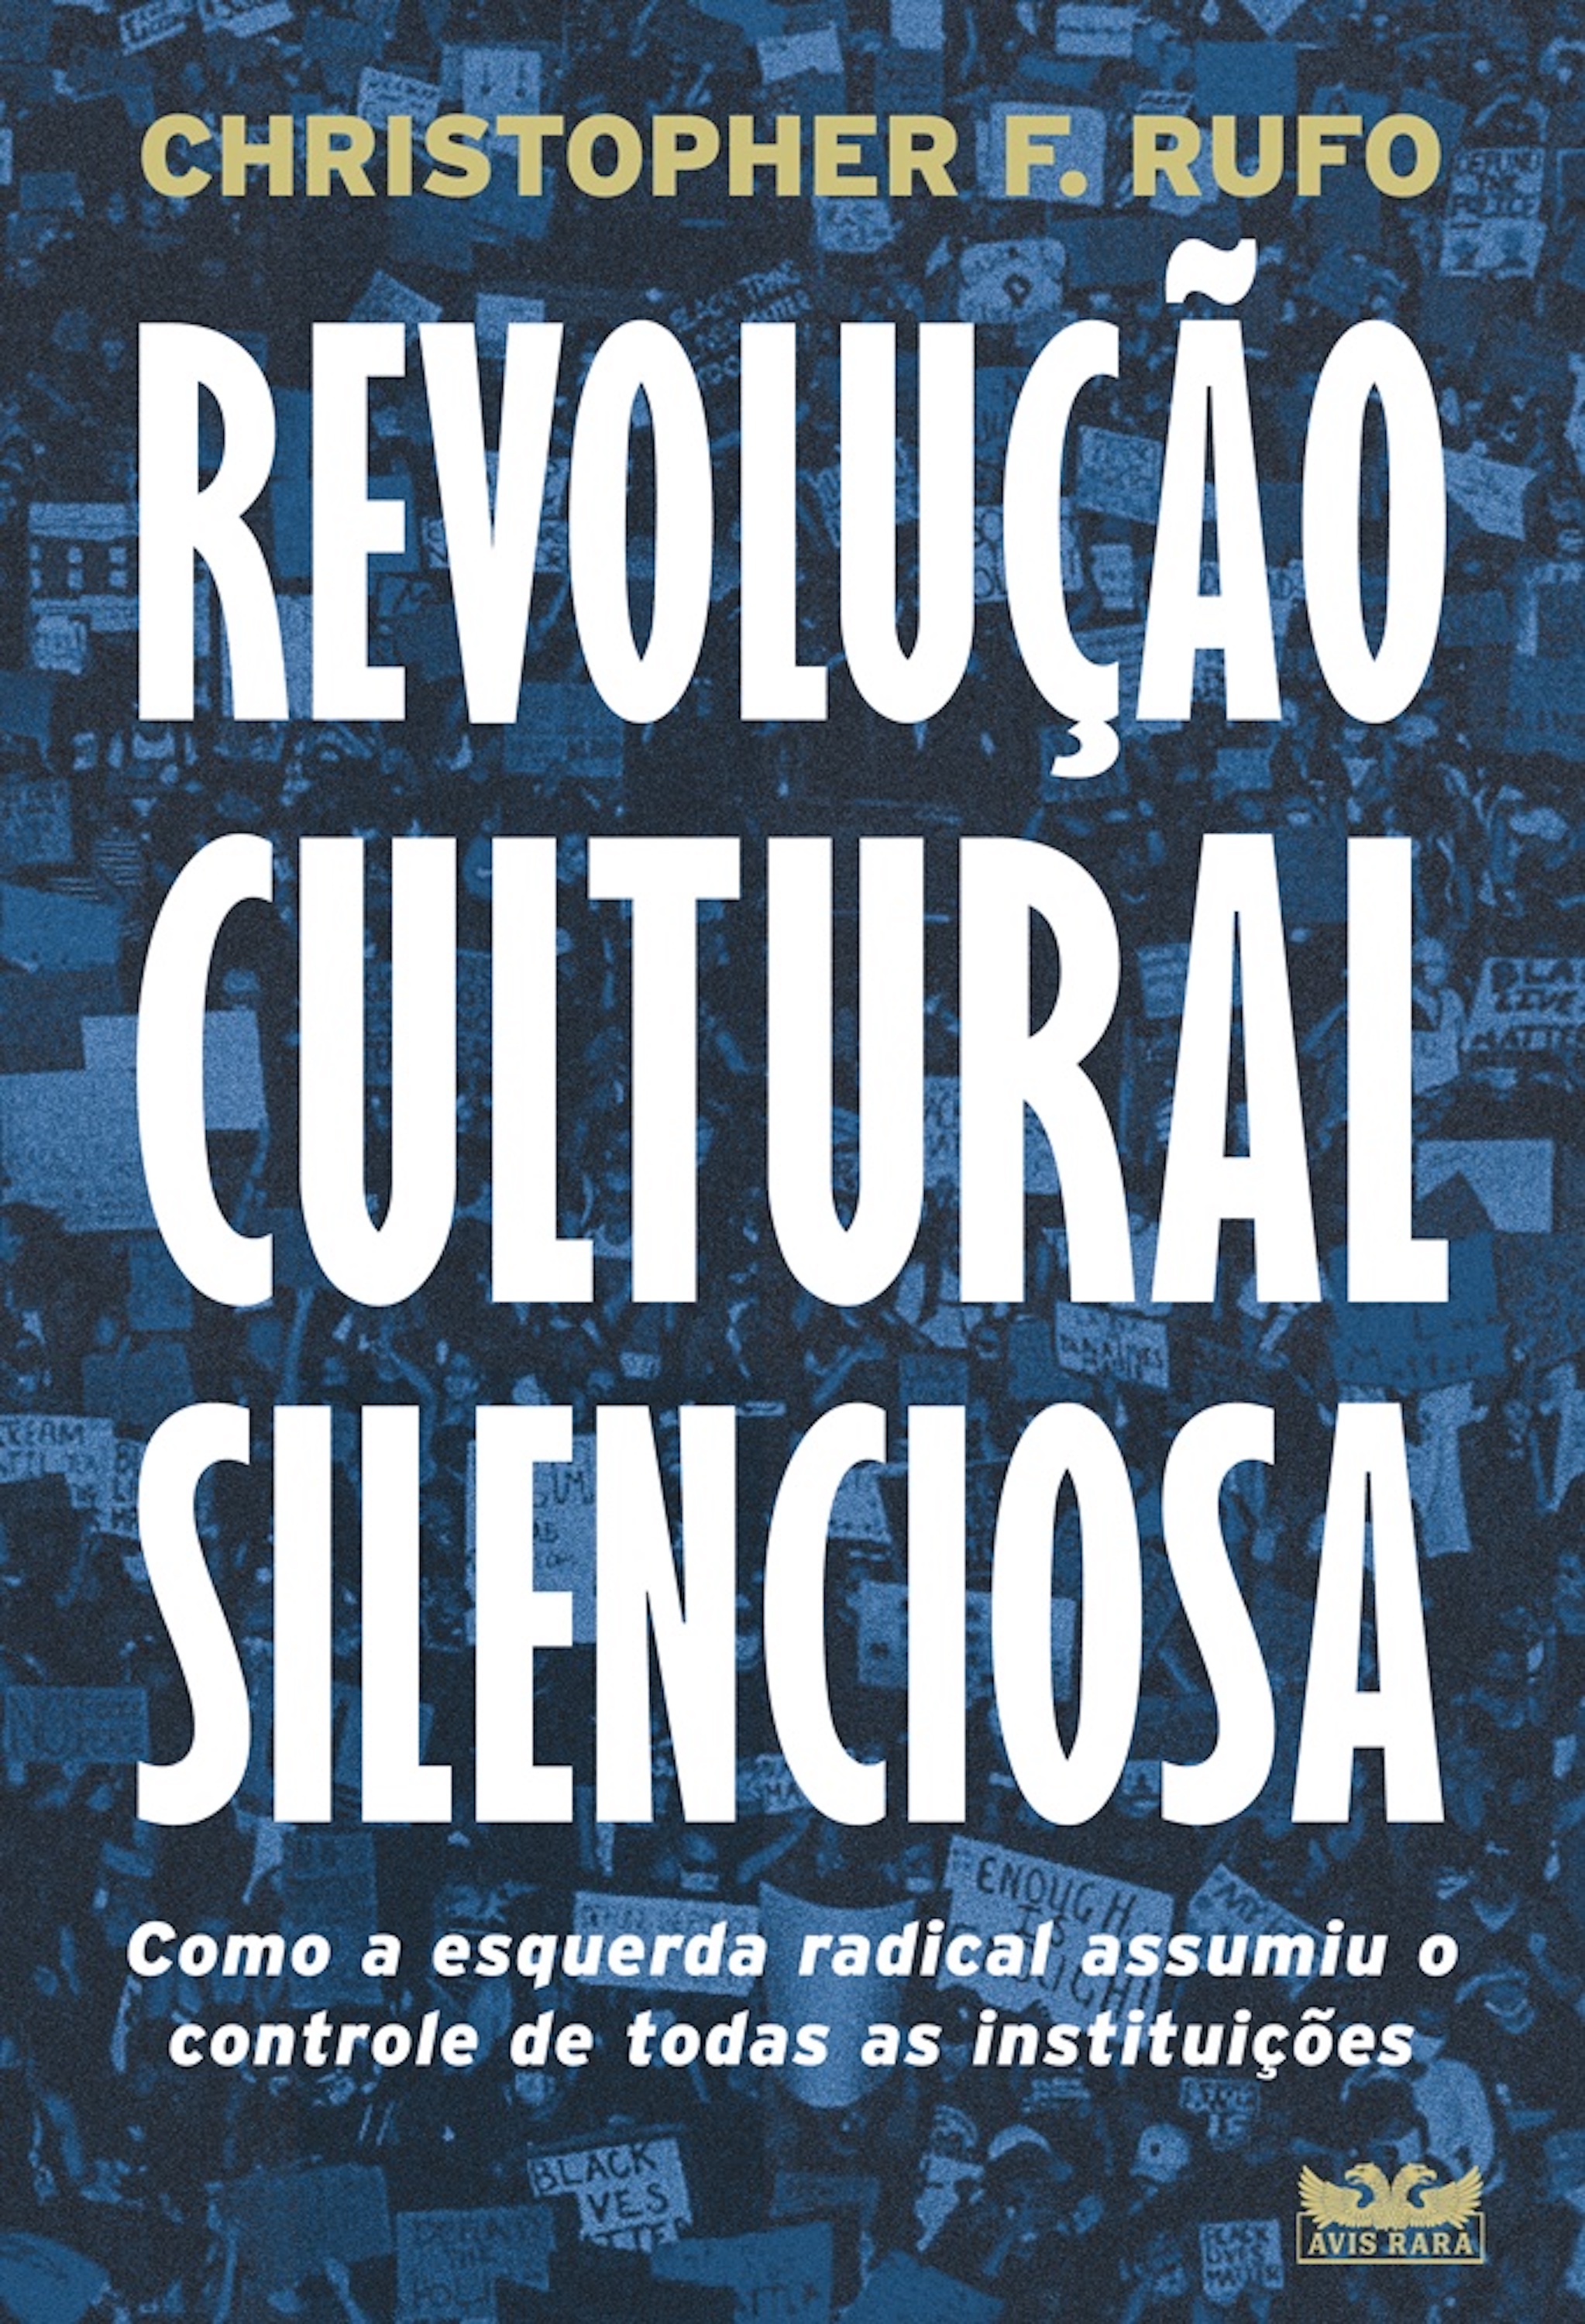 Revolução cultural silenciosa